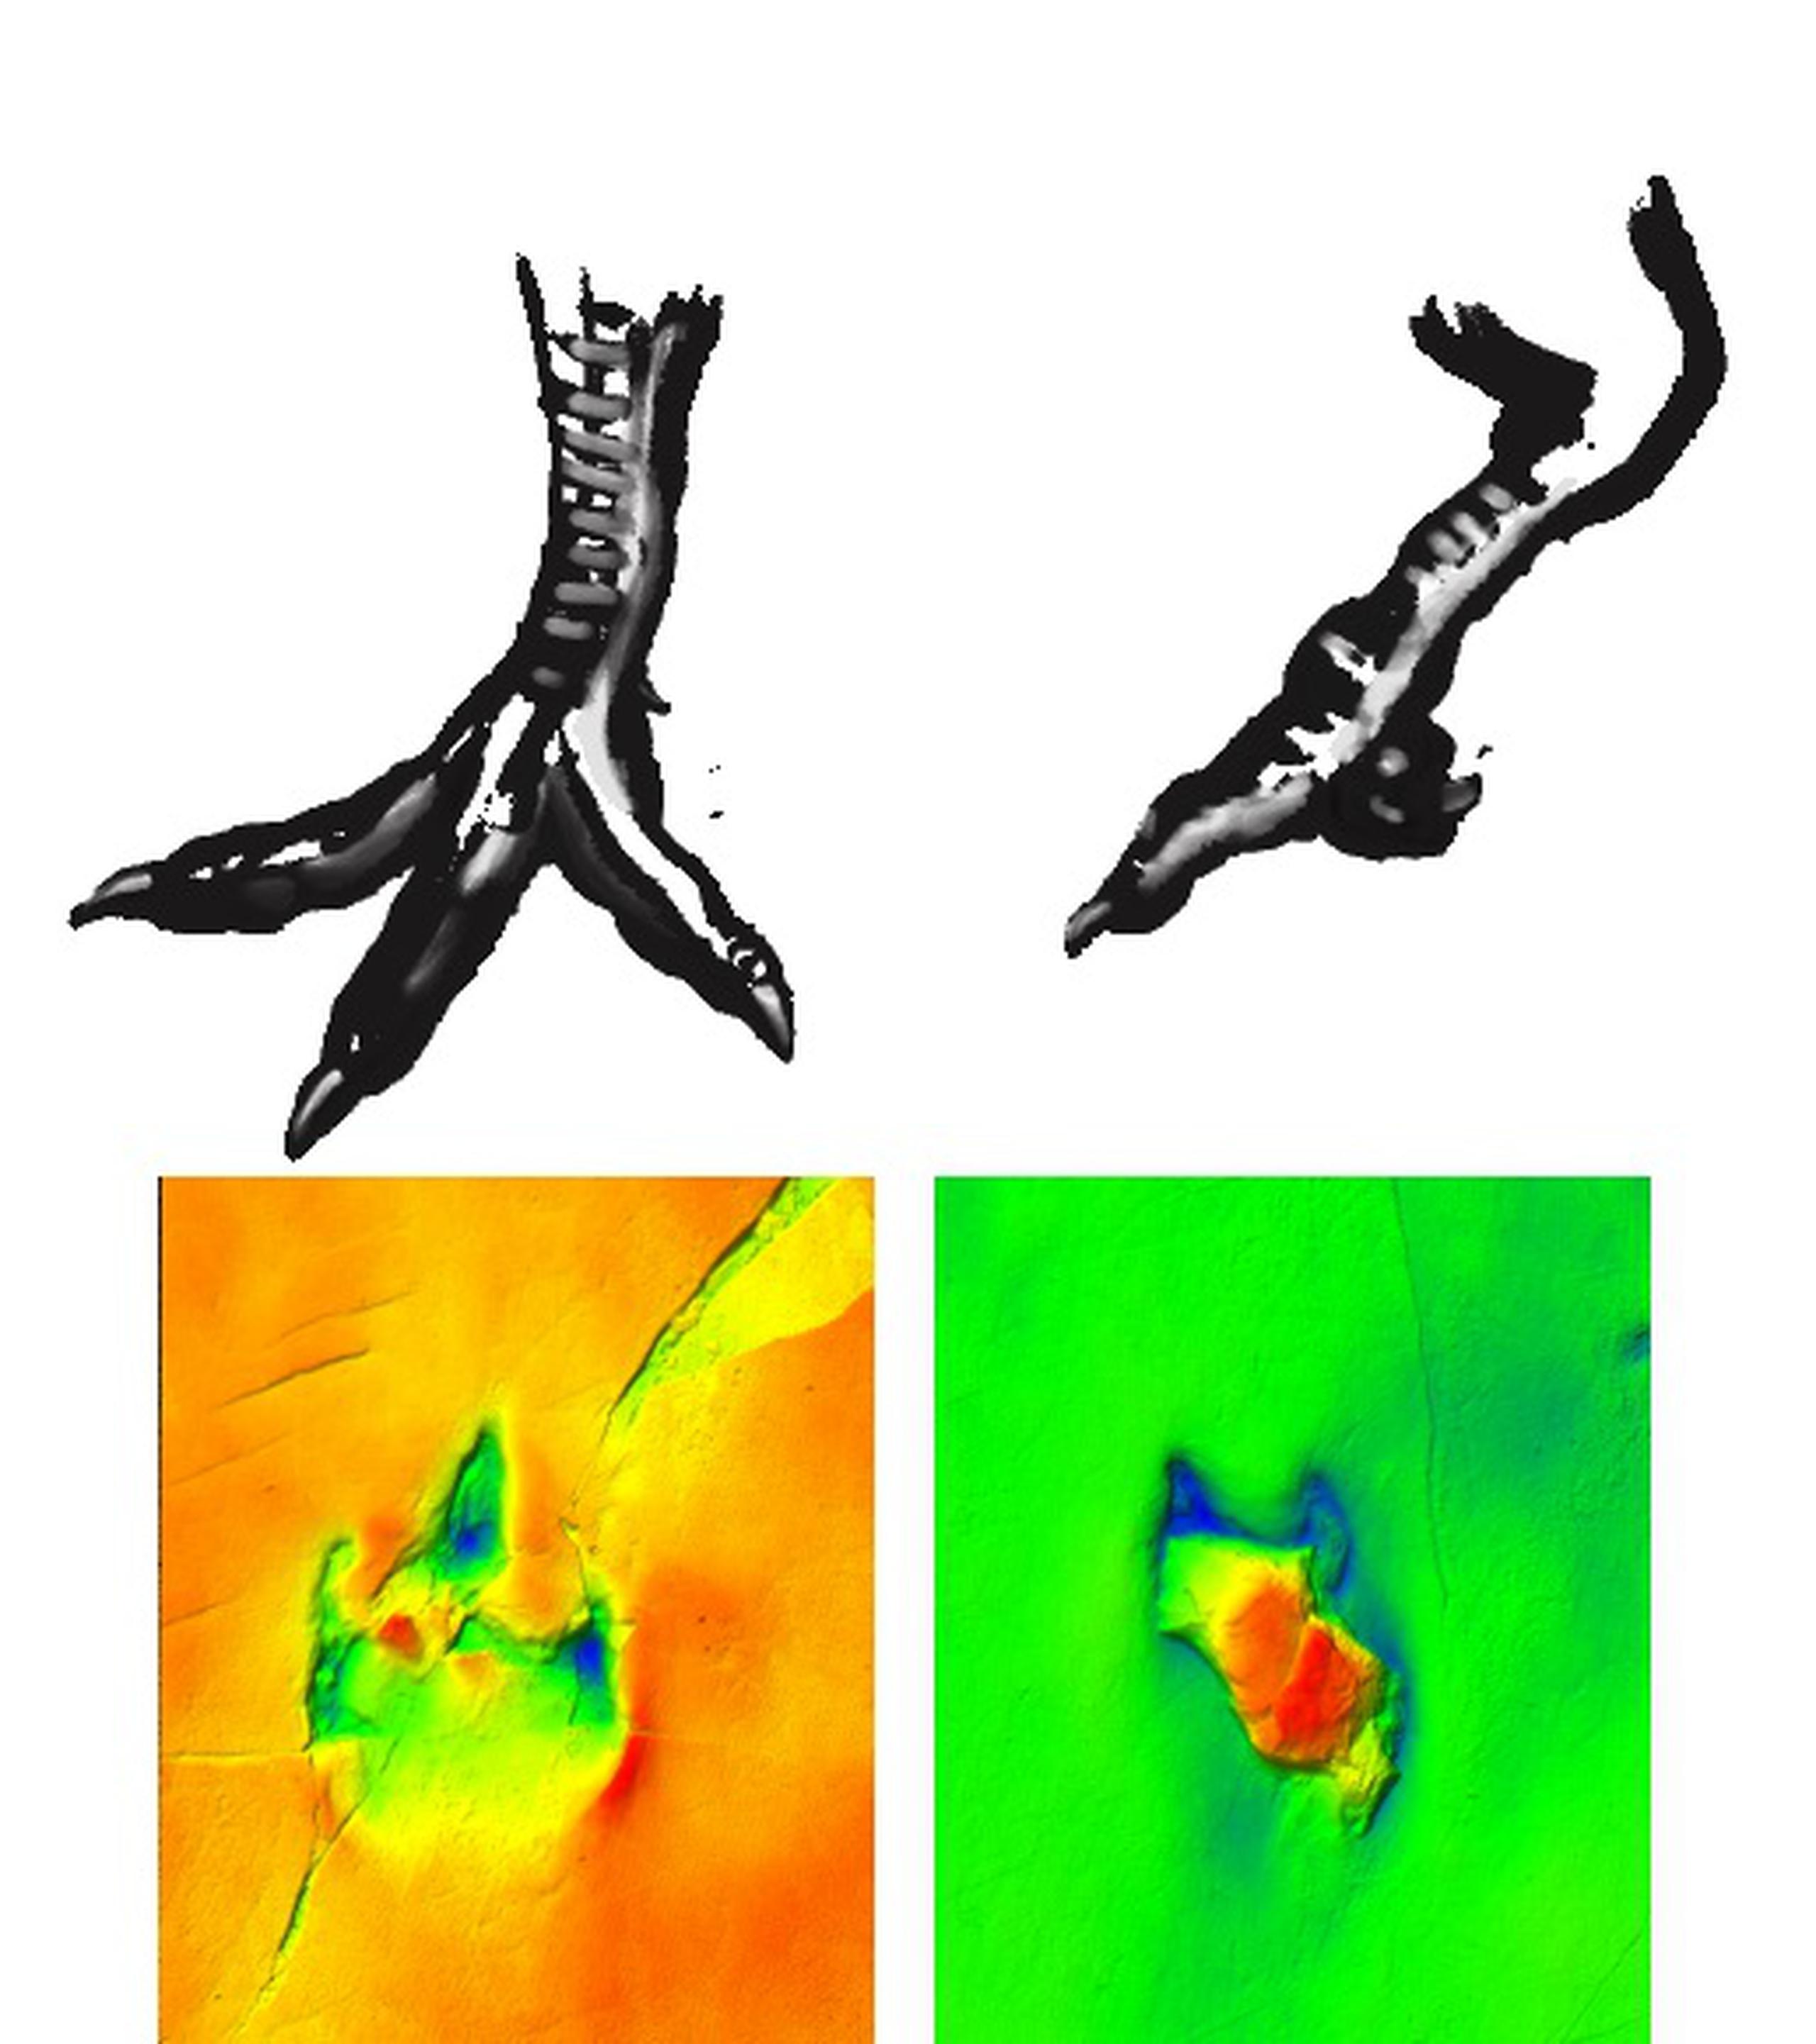 Posible reconstrucción de la deformidad del pie del dinosaurio. EFE/Recreación artística de Lara de la Cita, y fotografías del equipo de investigación de Las Hoyas, Universidad Autónoma de Madrid
